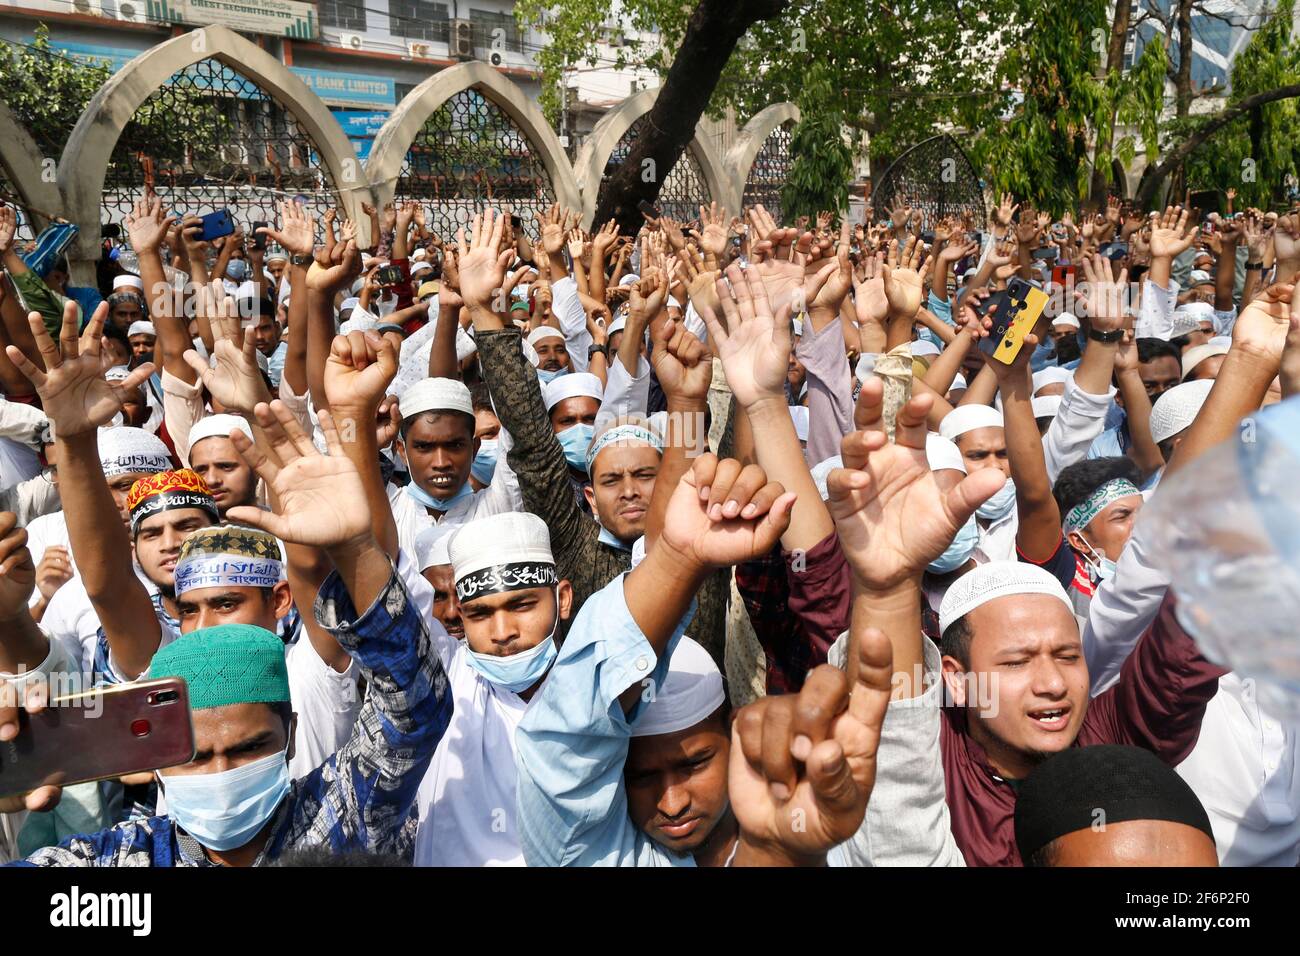 2 de abril de 2021, Dhaka, Bangladesh: Los partidarios de Hefajat-e-Islam Bangladesh gritan su lema mientras se reúnen en una manifestación frente a la Mezquita Nacional Baitul Mukarram, que protesta por la muerte de sus activistas durante enfrentamientos con los encargados de hacer cumplir la ley durante tres días, en Dhaka, Bangladesh, 2 de abril de 2021. (Imagen de crédito: © Suvra Kanti Das/ZUMA Wire) Foto de stock